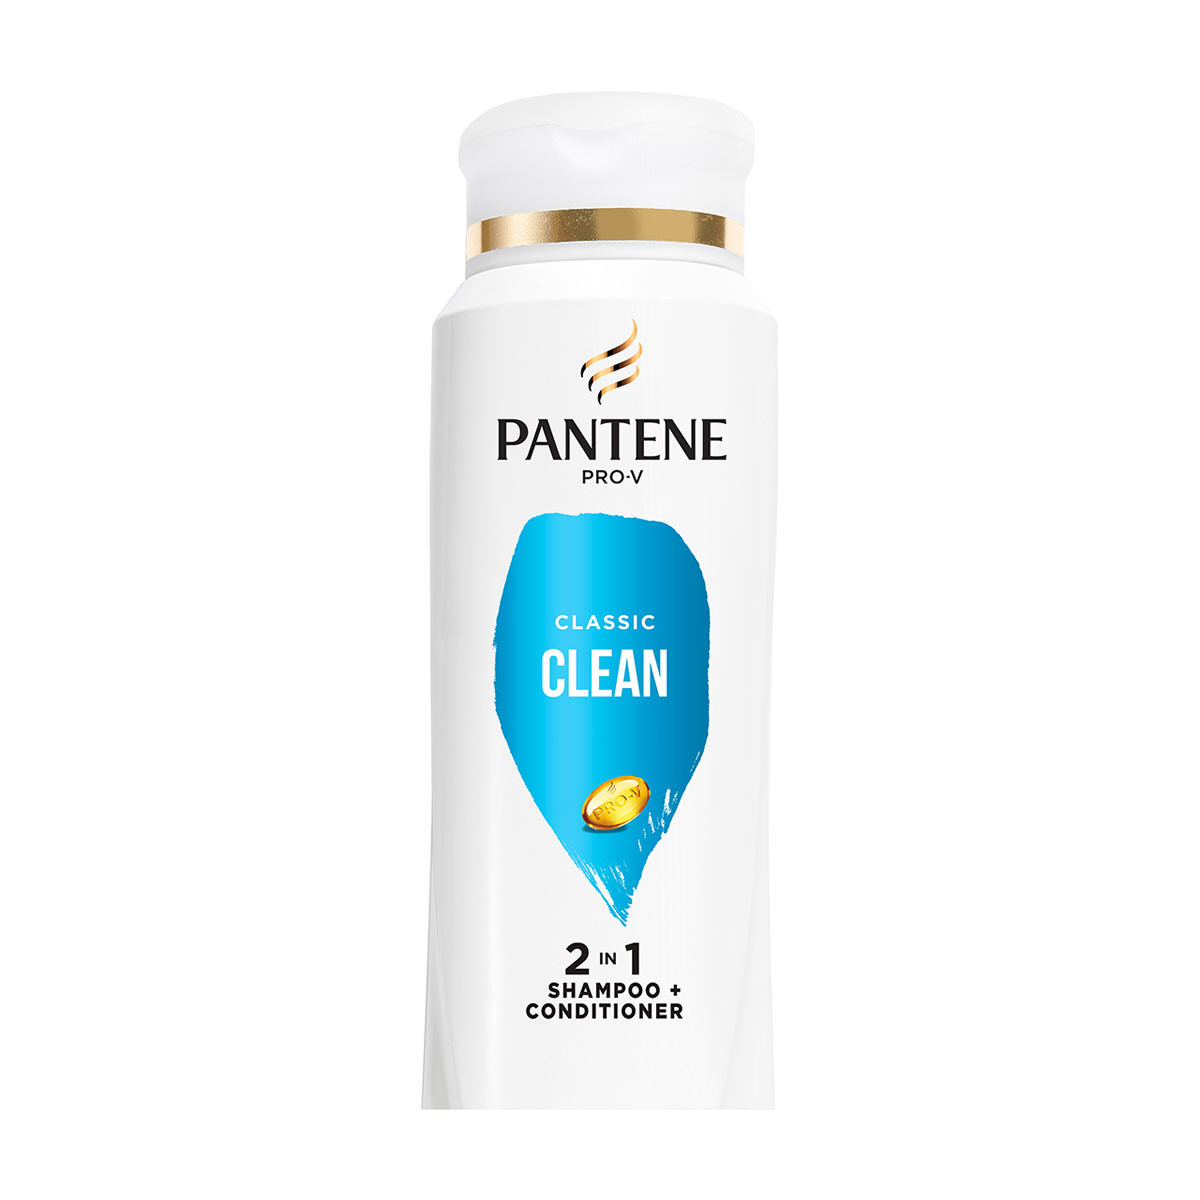 PANTENE PRO-V Classic Clean 2 in 1 Shampoo + Conditioner, 17 fl oz